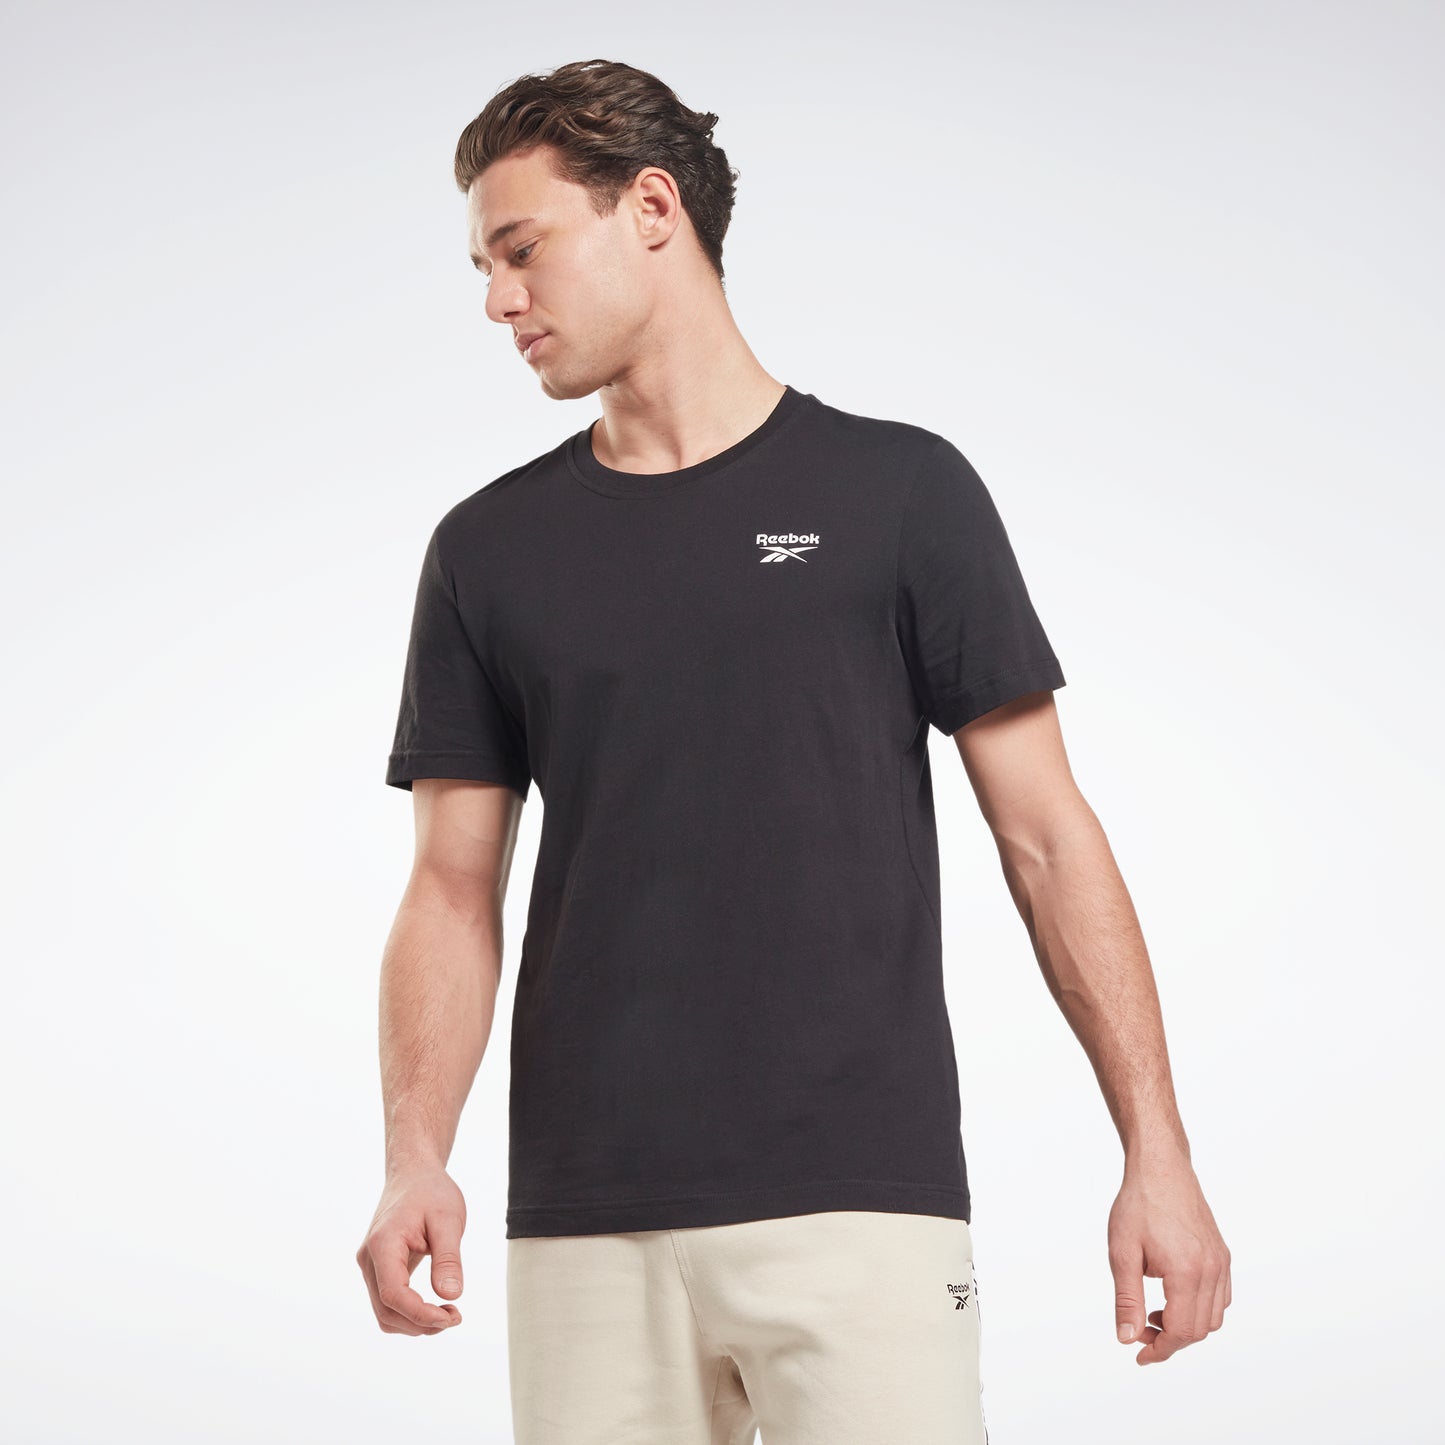 Men's black & white t-shirts w/copper logo - Revere Copper